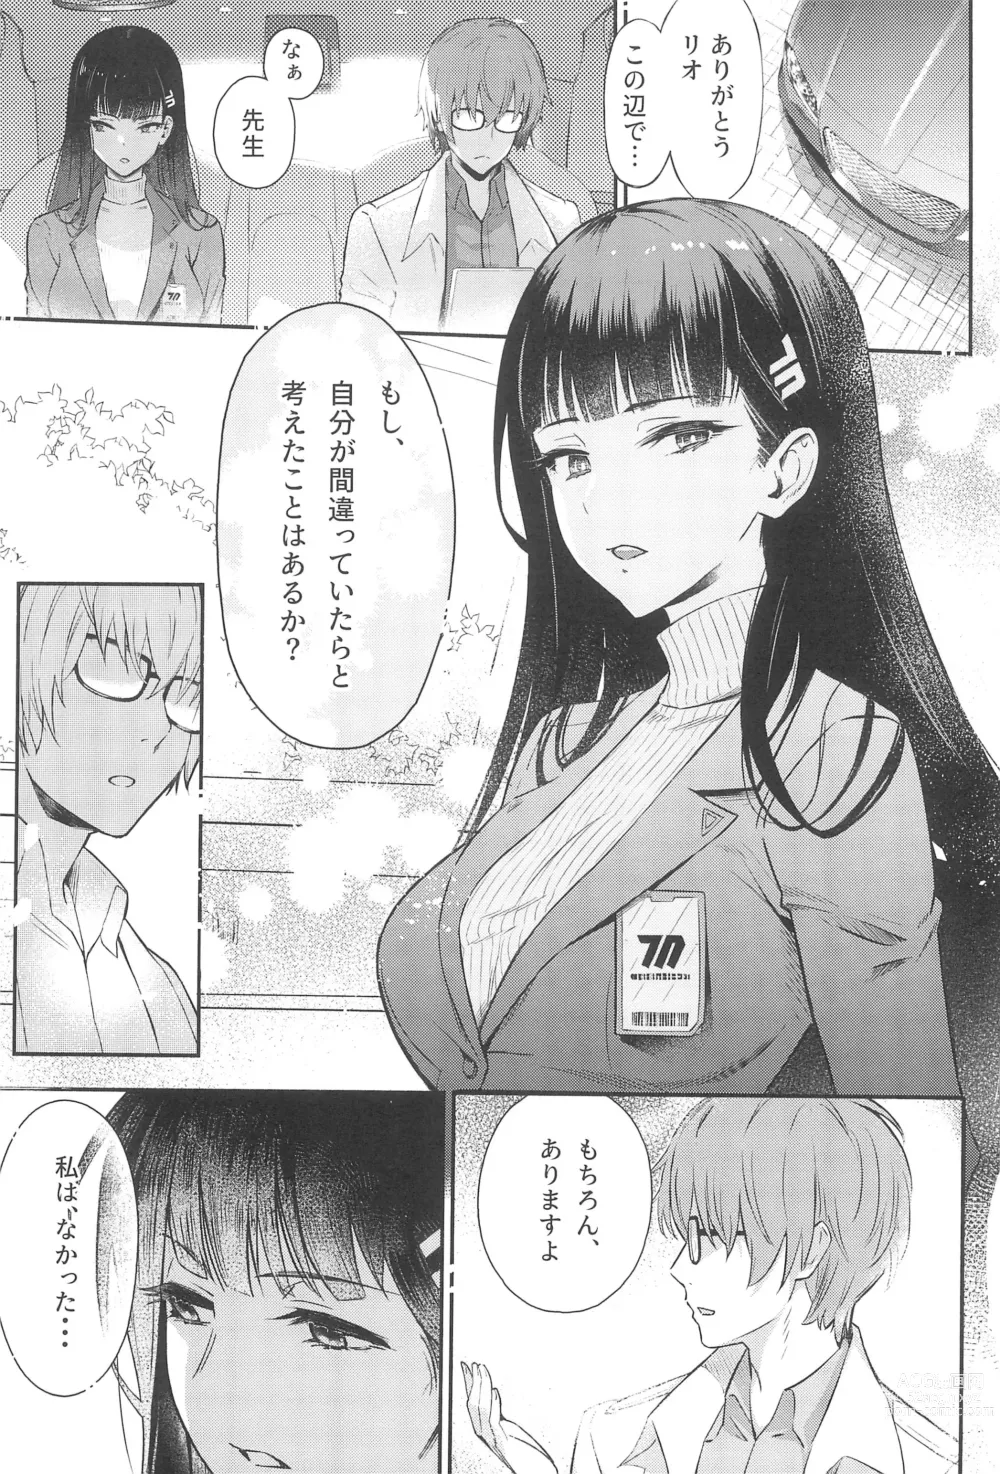 Page 7 of doujinshi Rio-chan wa Otosaretai. - Rio Want To Be Fall in Love